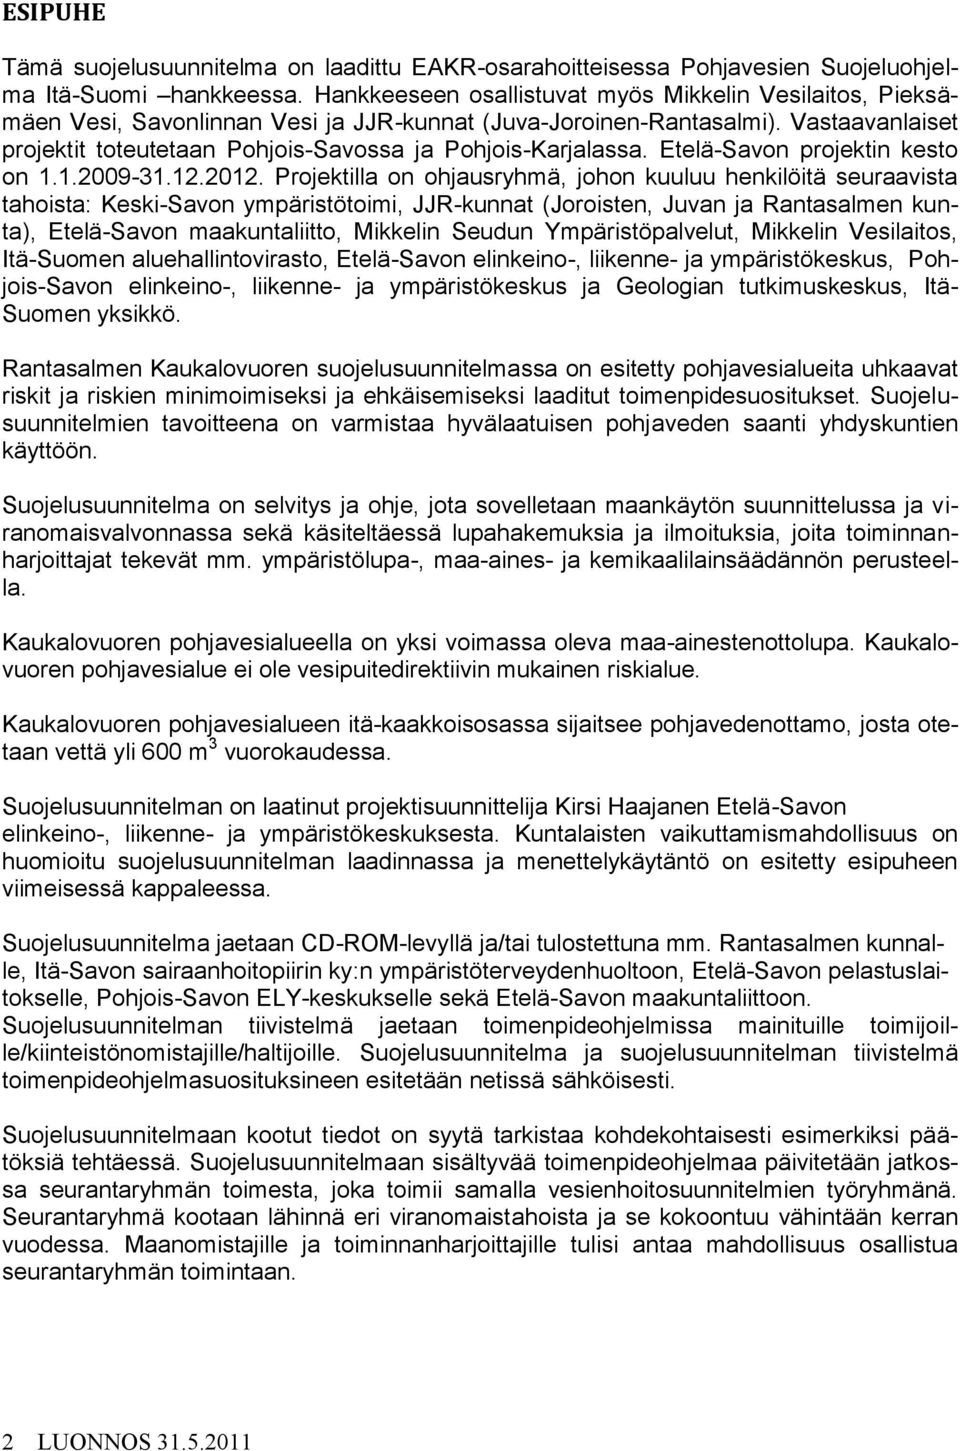 Vastaavanlaiset projektit toteutetaan Pohjois-Savossa ja Pohjois-Karjalassa. Etelä-Savon projektin kesto on 1.1.2009-31.12.2012.